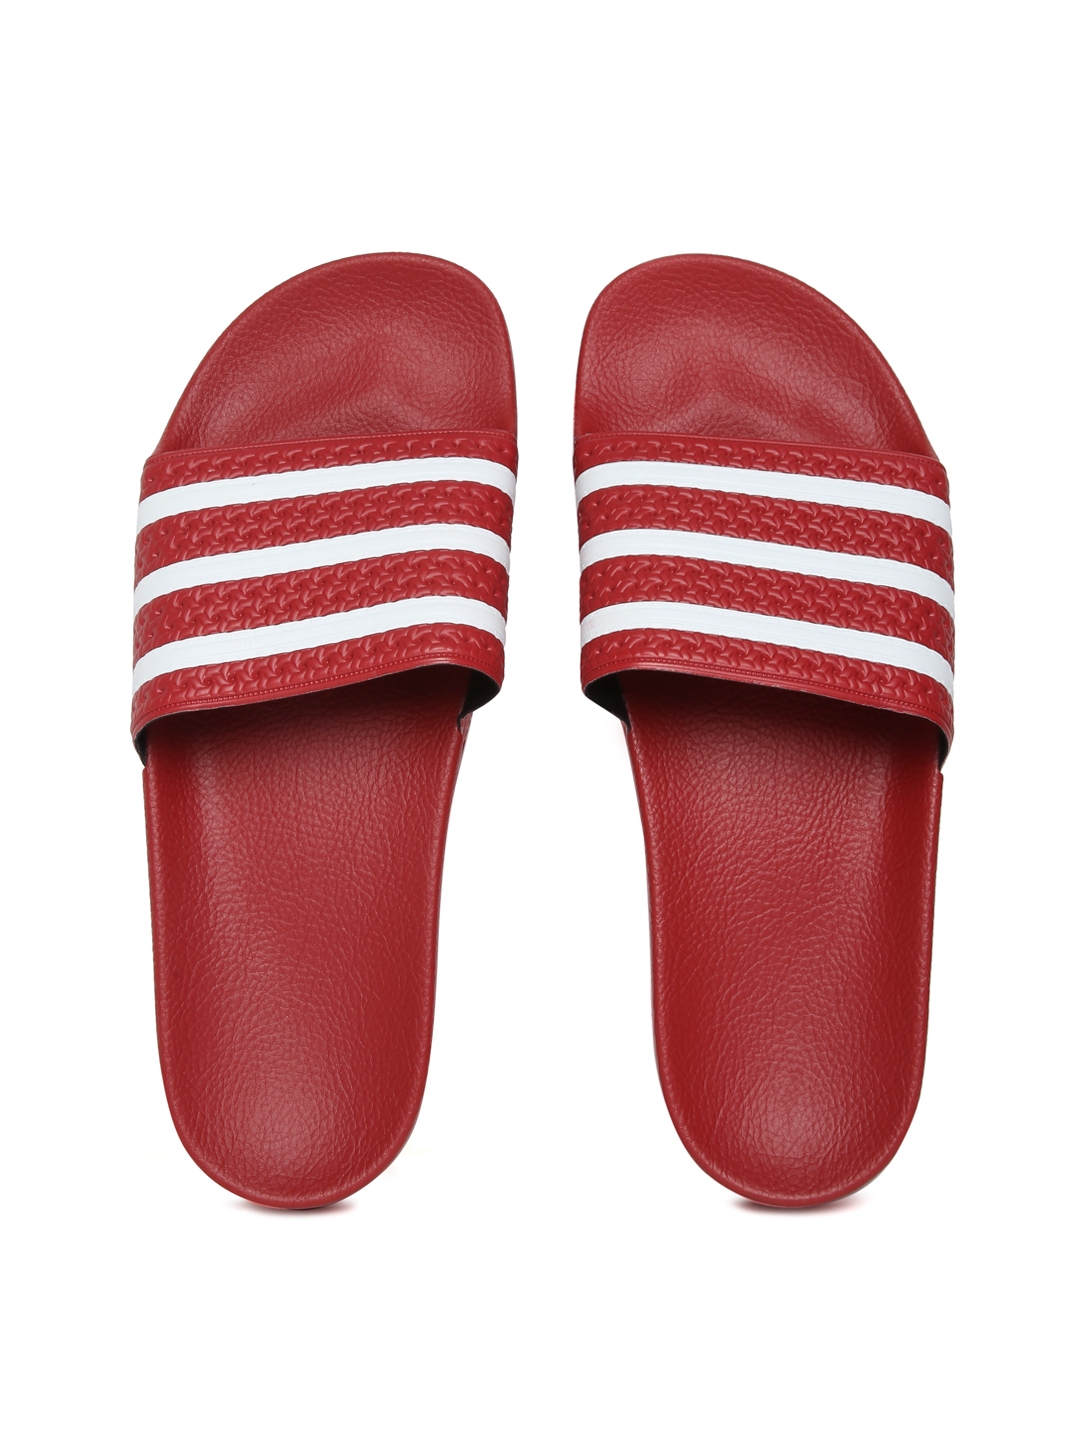 Buy ADIDAS Originals Men Red Flip Flops - Flip Flops for 856322 | Myntra